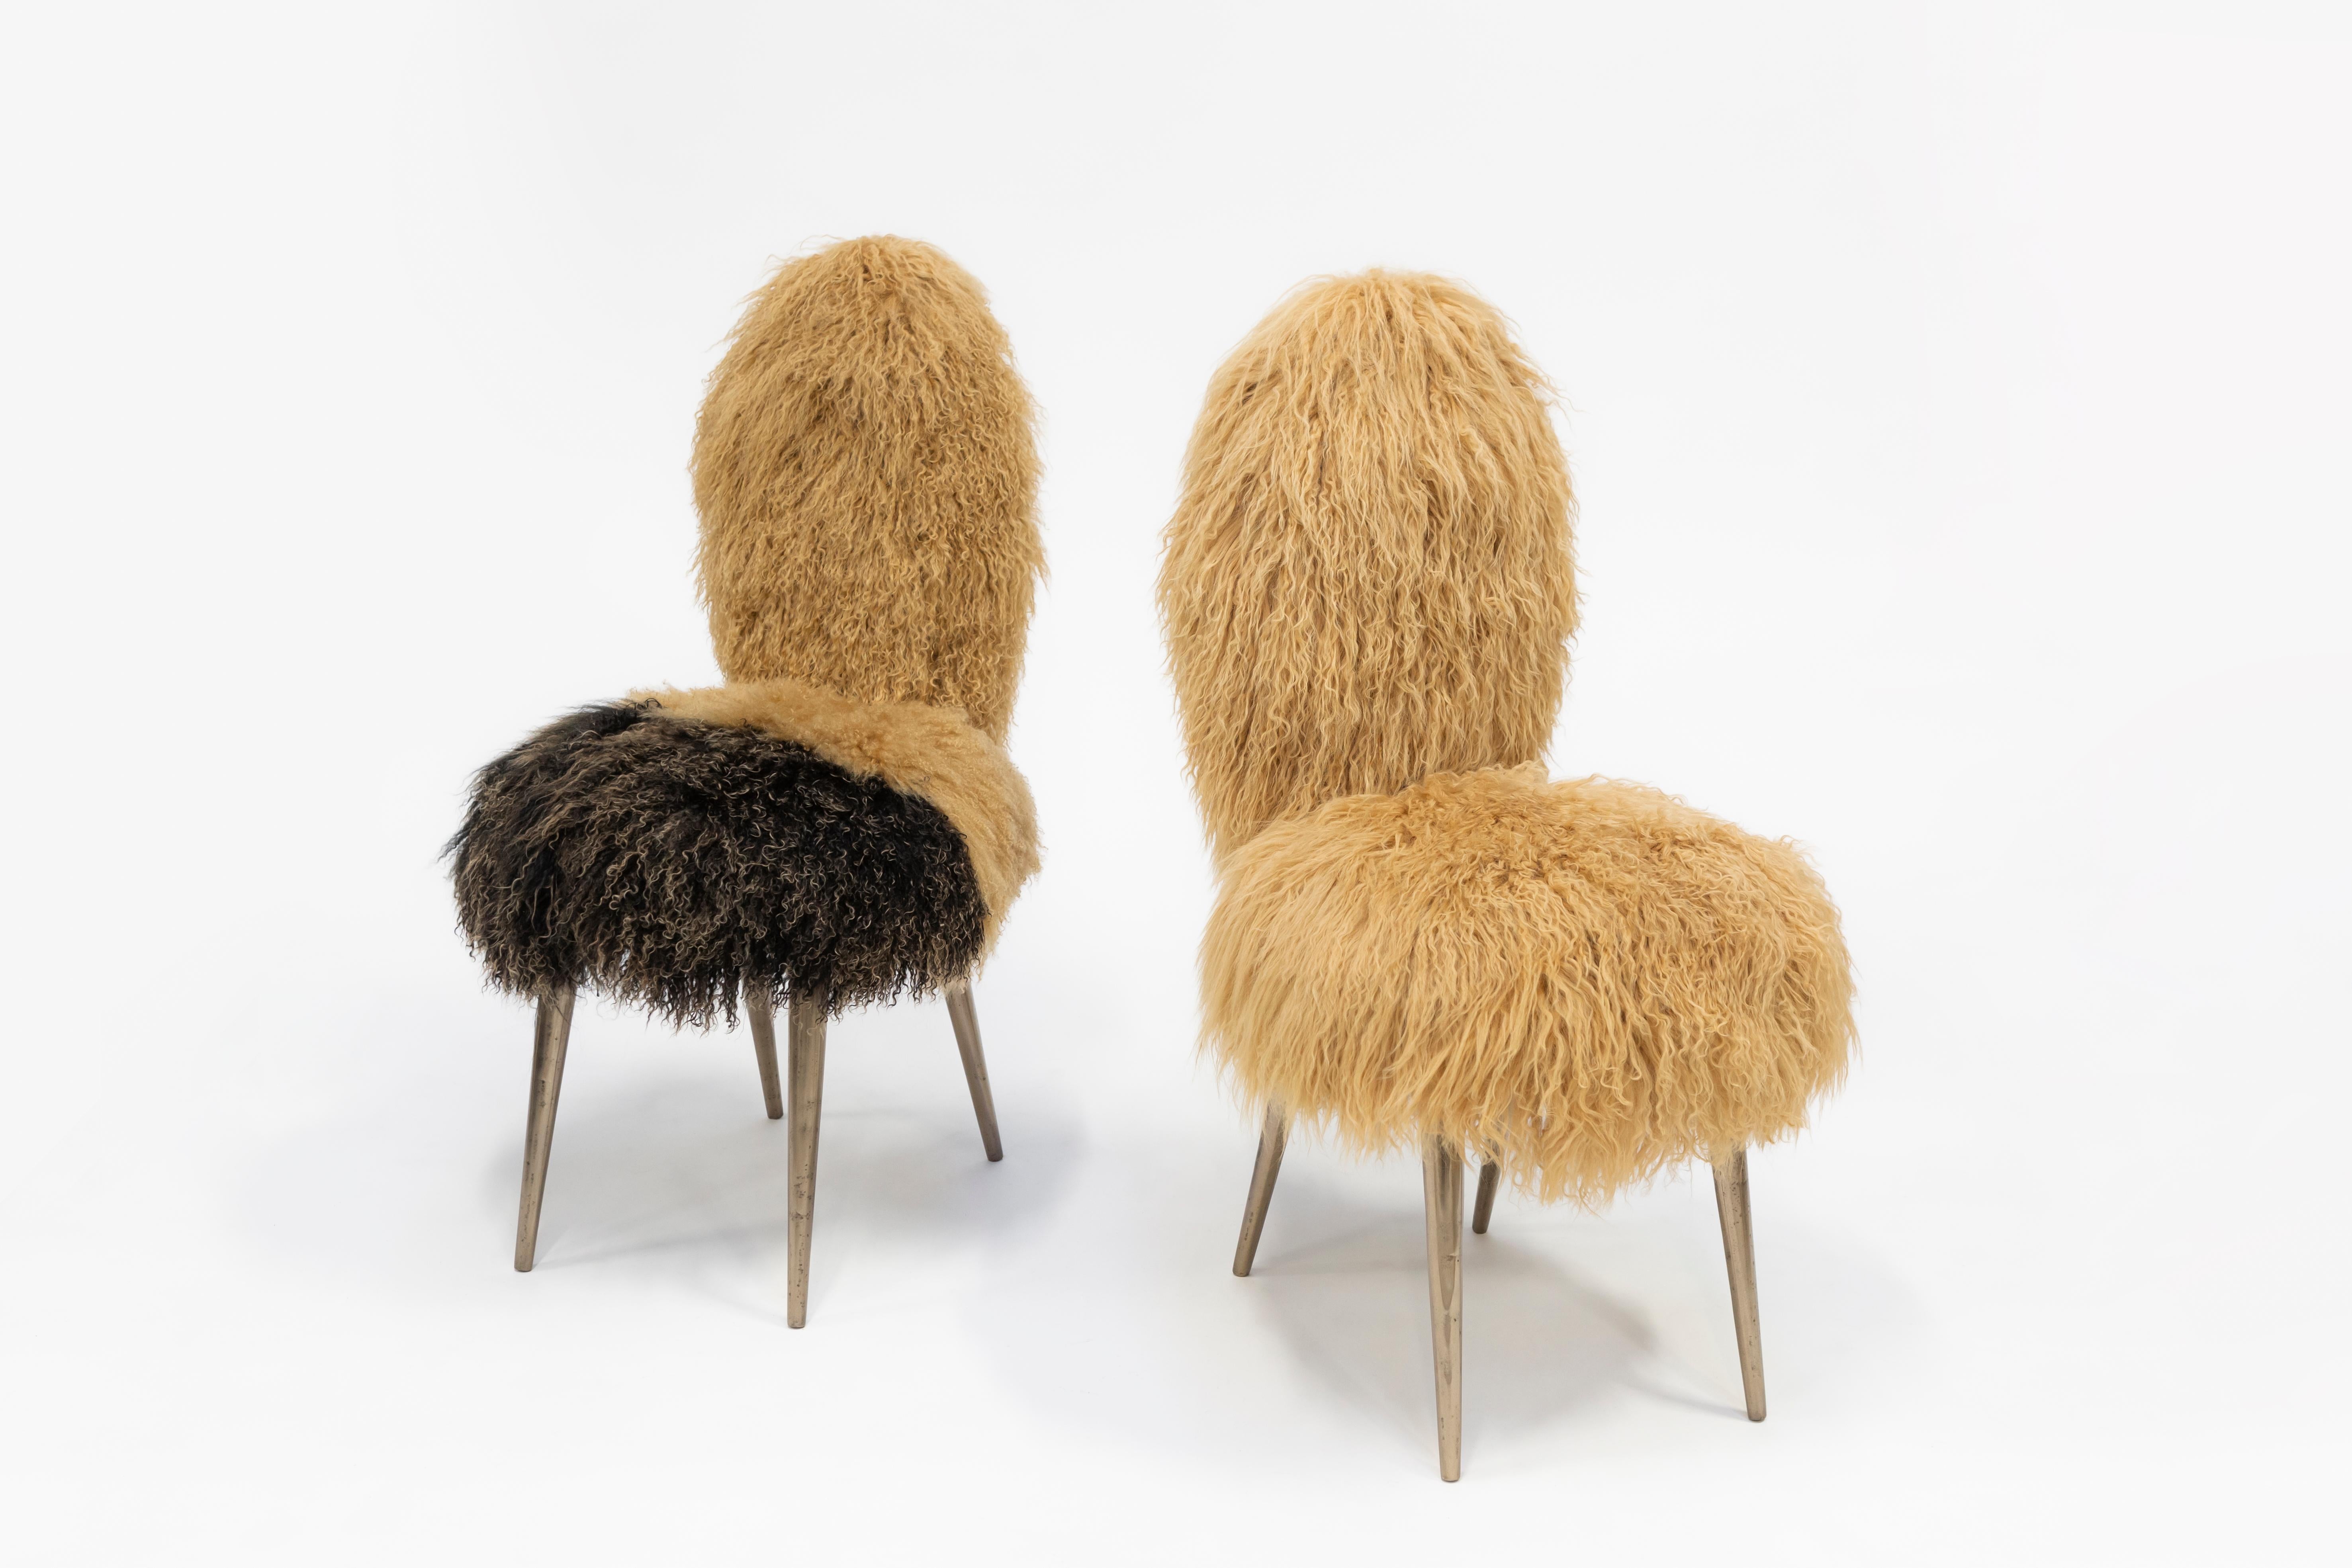 Italian Vintage Chairs 1950 by U. Mascagni Trasformed by Draga & Aurel Fur, 21st Century